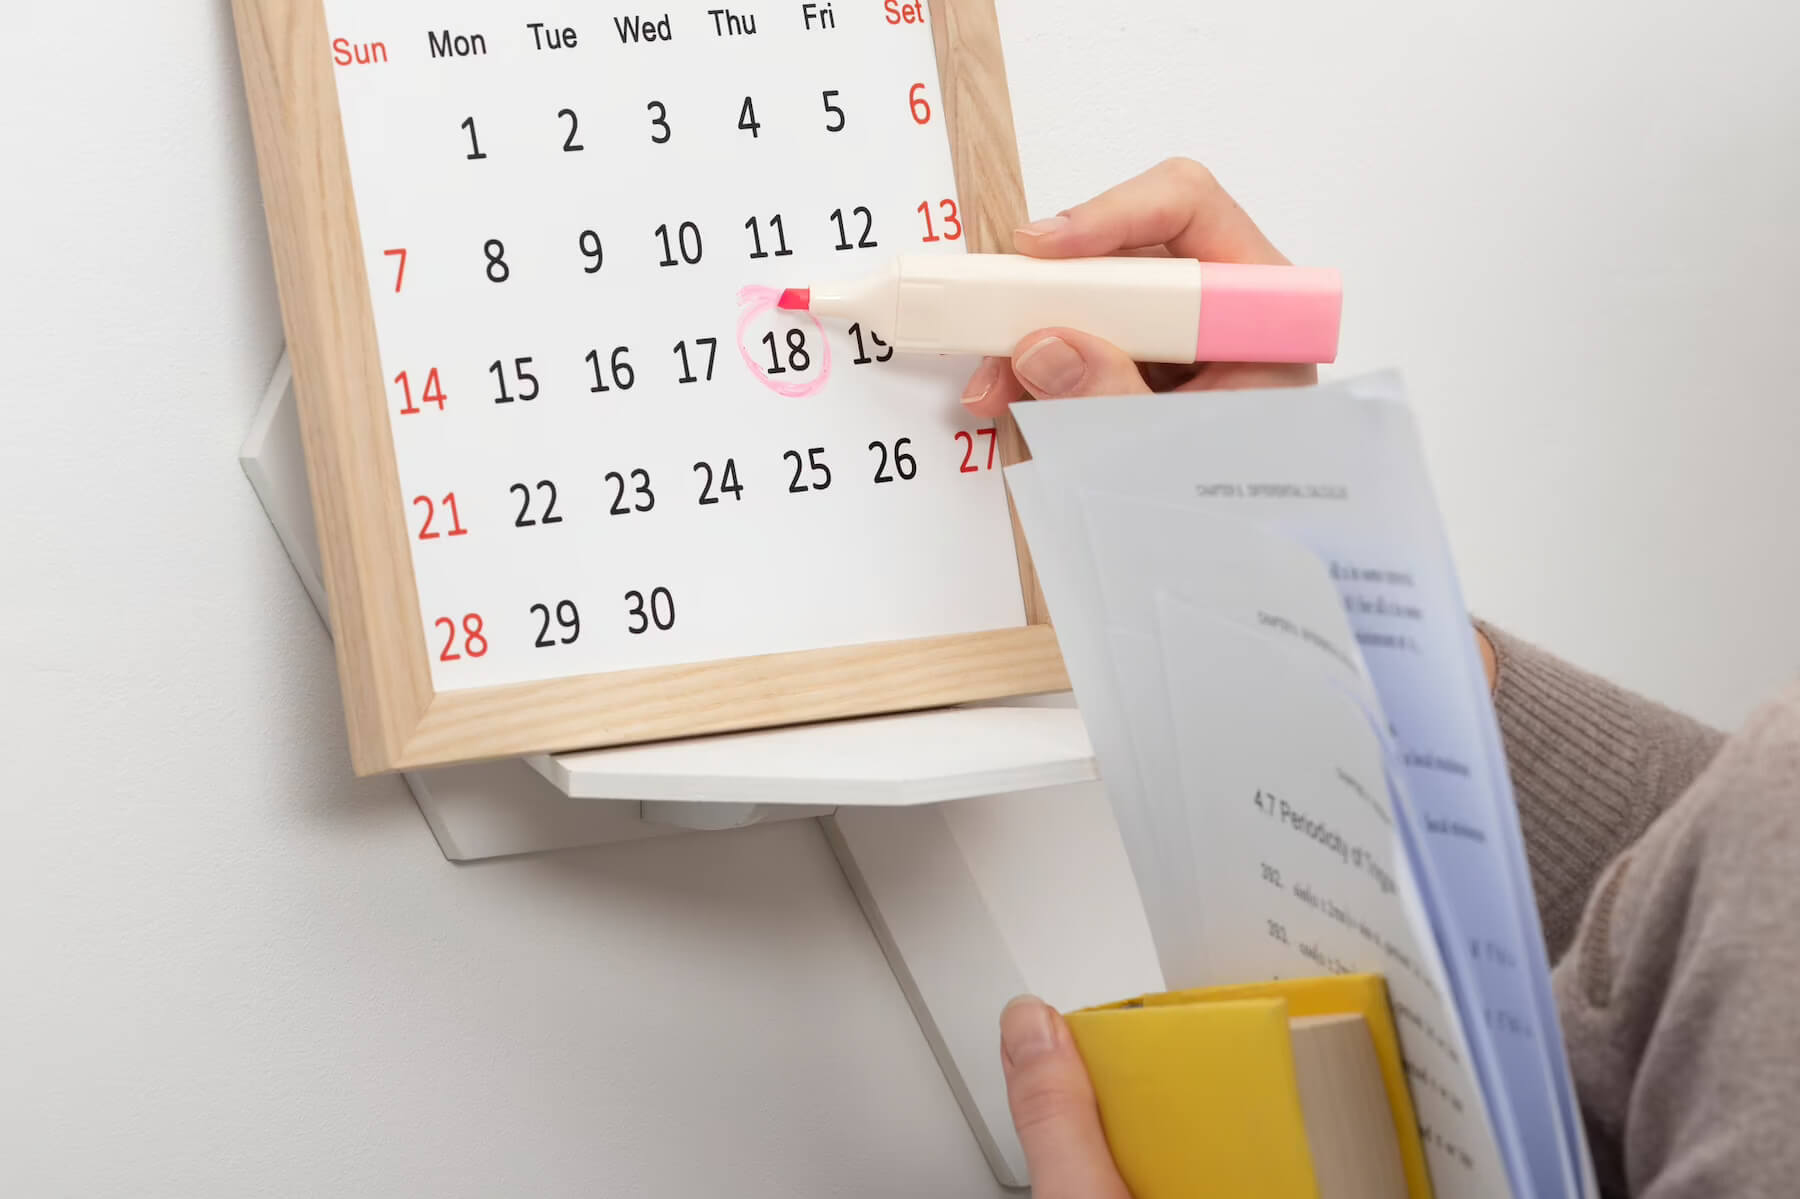 Marking a deadline on a calendar with a pink highlighter